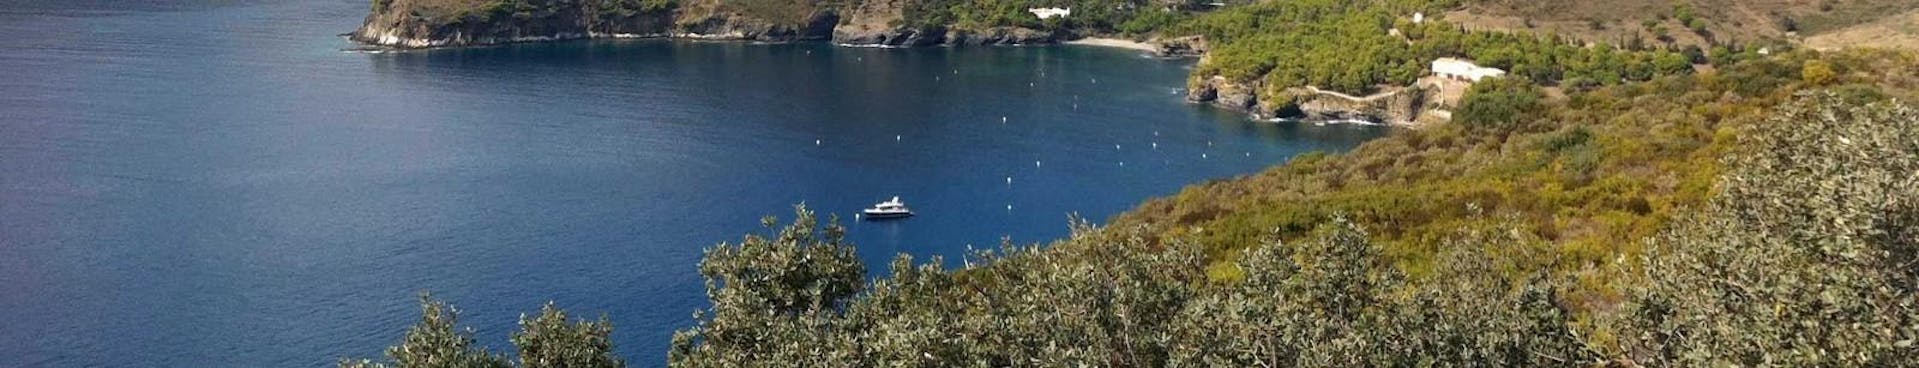 Excursión en Catamarán a Cap Norfeu y Cadaqués con Snorkeling con Magic Catamarans Mallorca